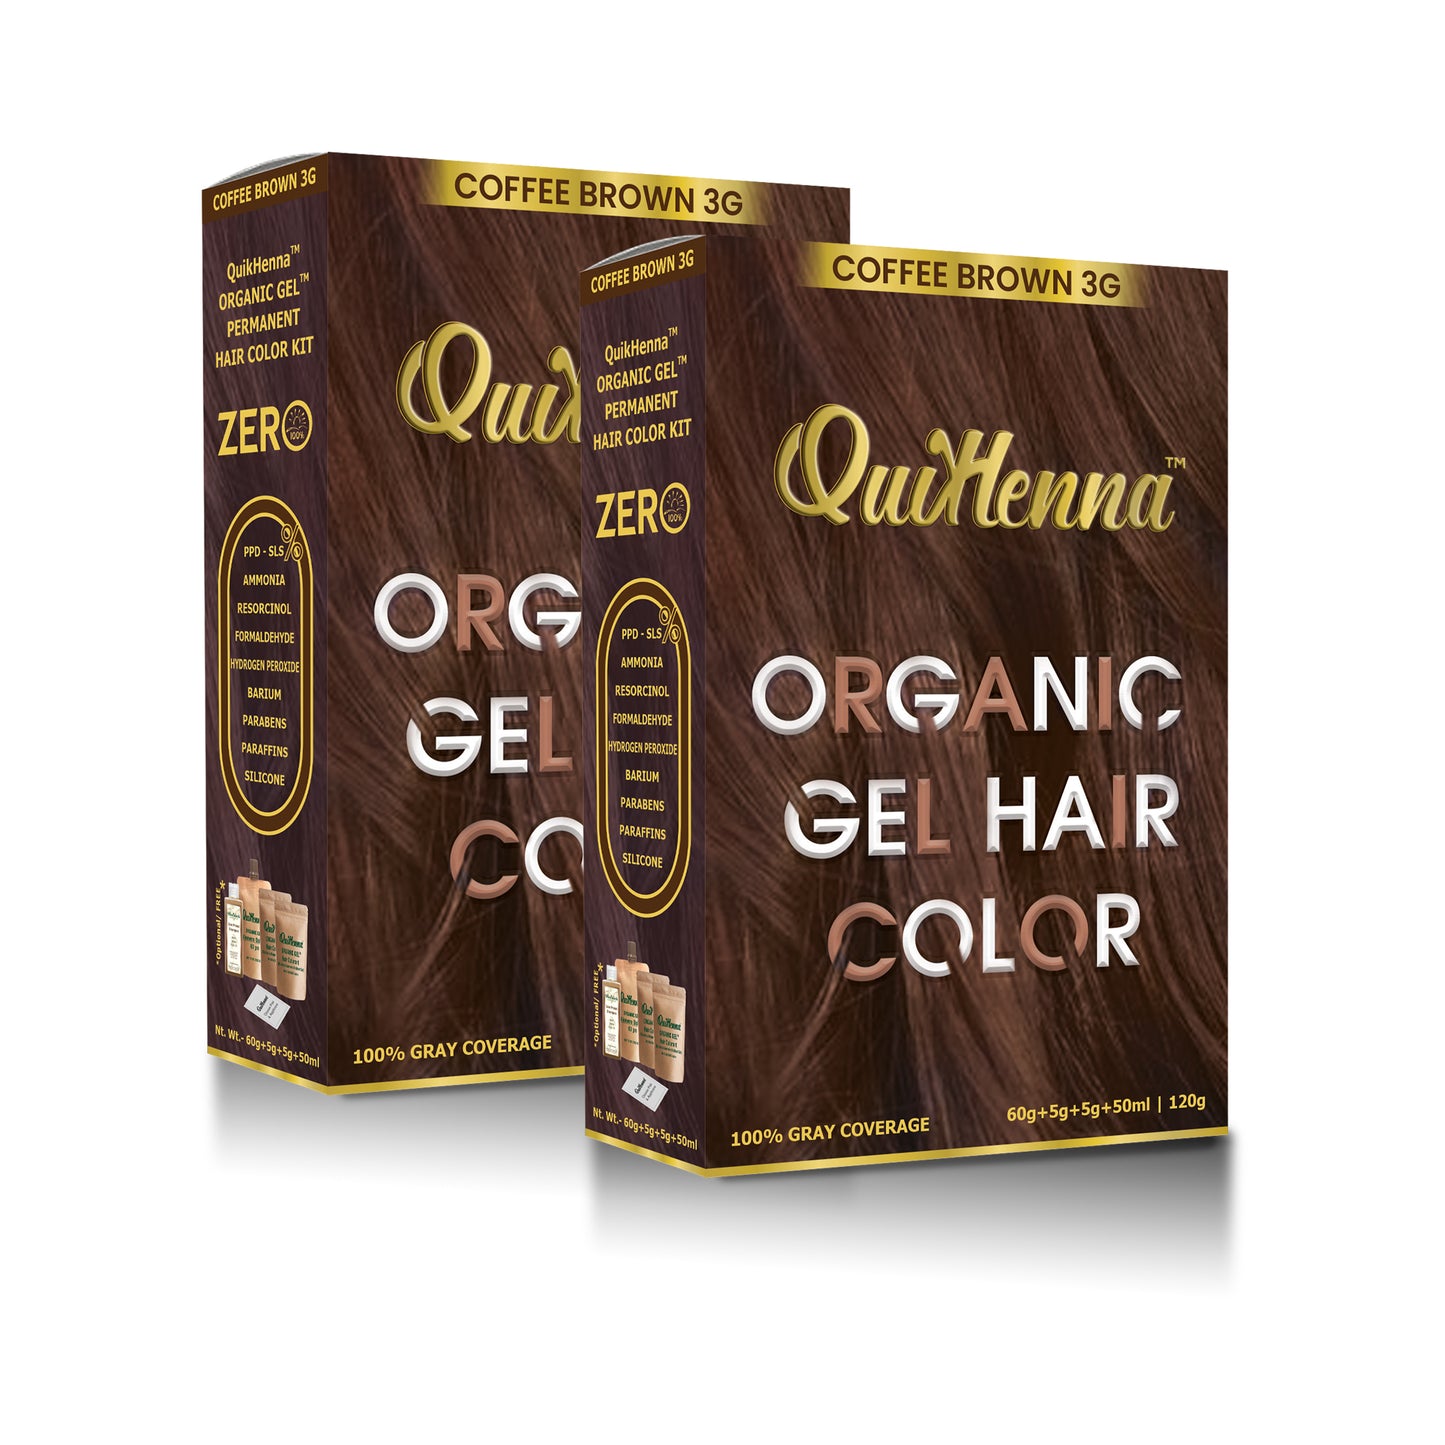 QuikHenna Organic Gel Hair Colour-11